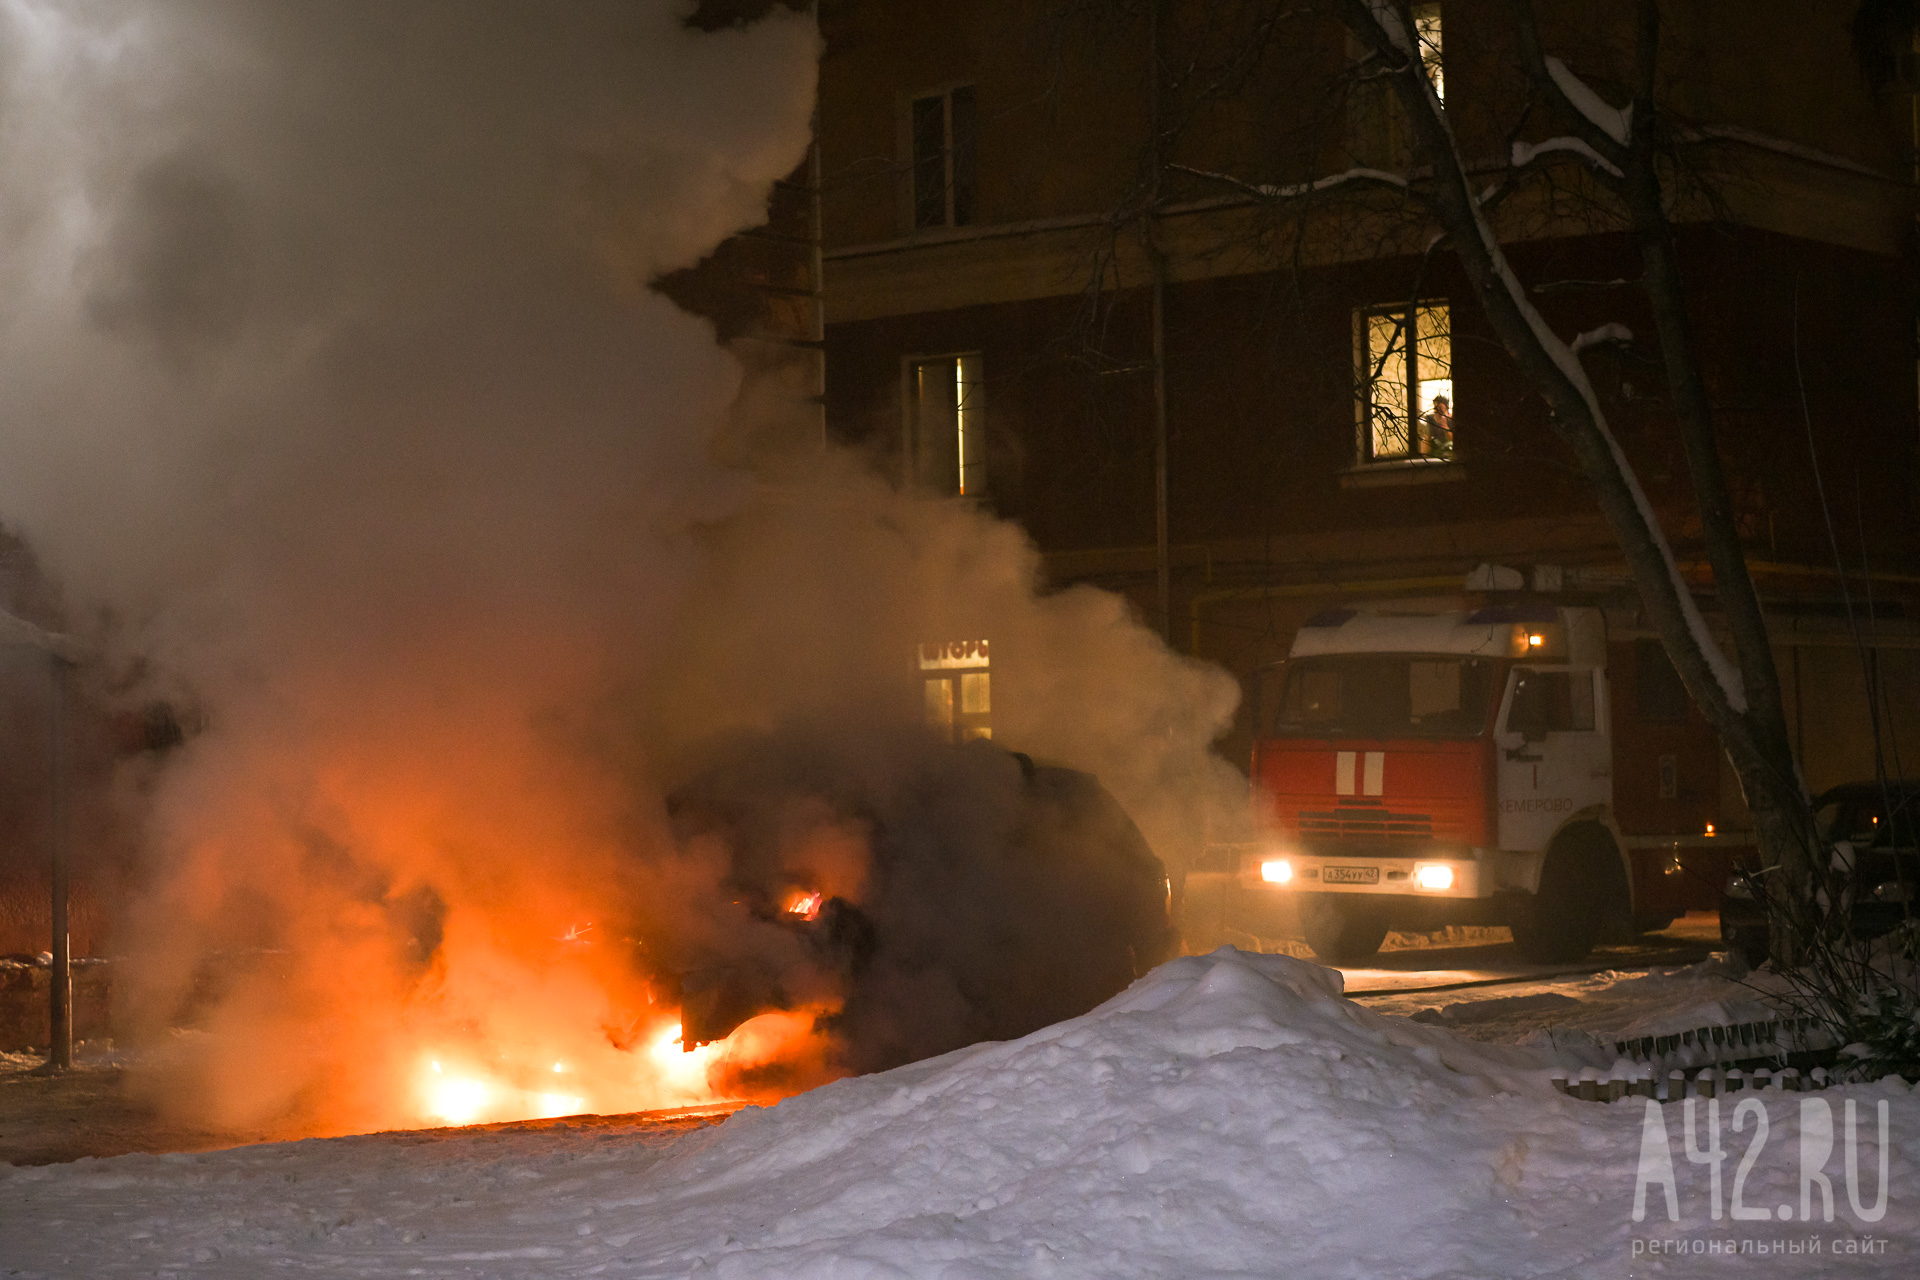 Ночью в Кузбассе загорелся легковой автомобиль. Пожарные потушили его за 10 минут